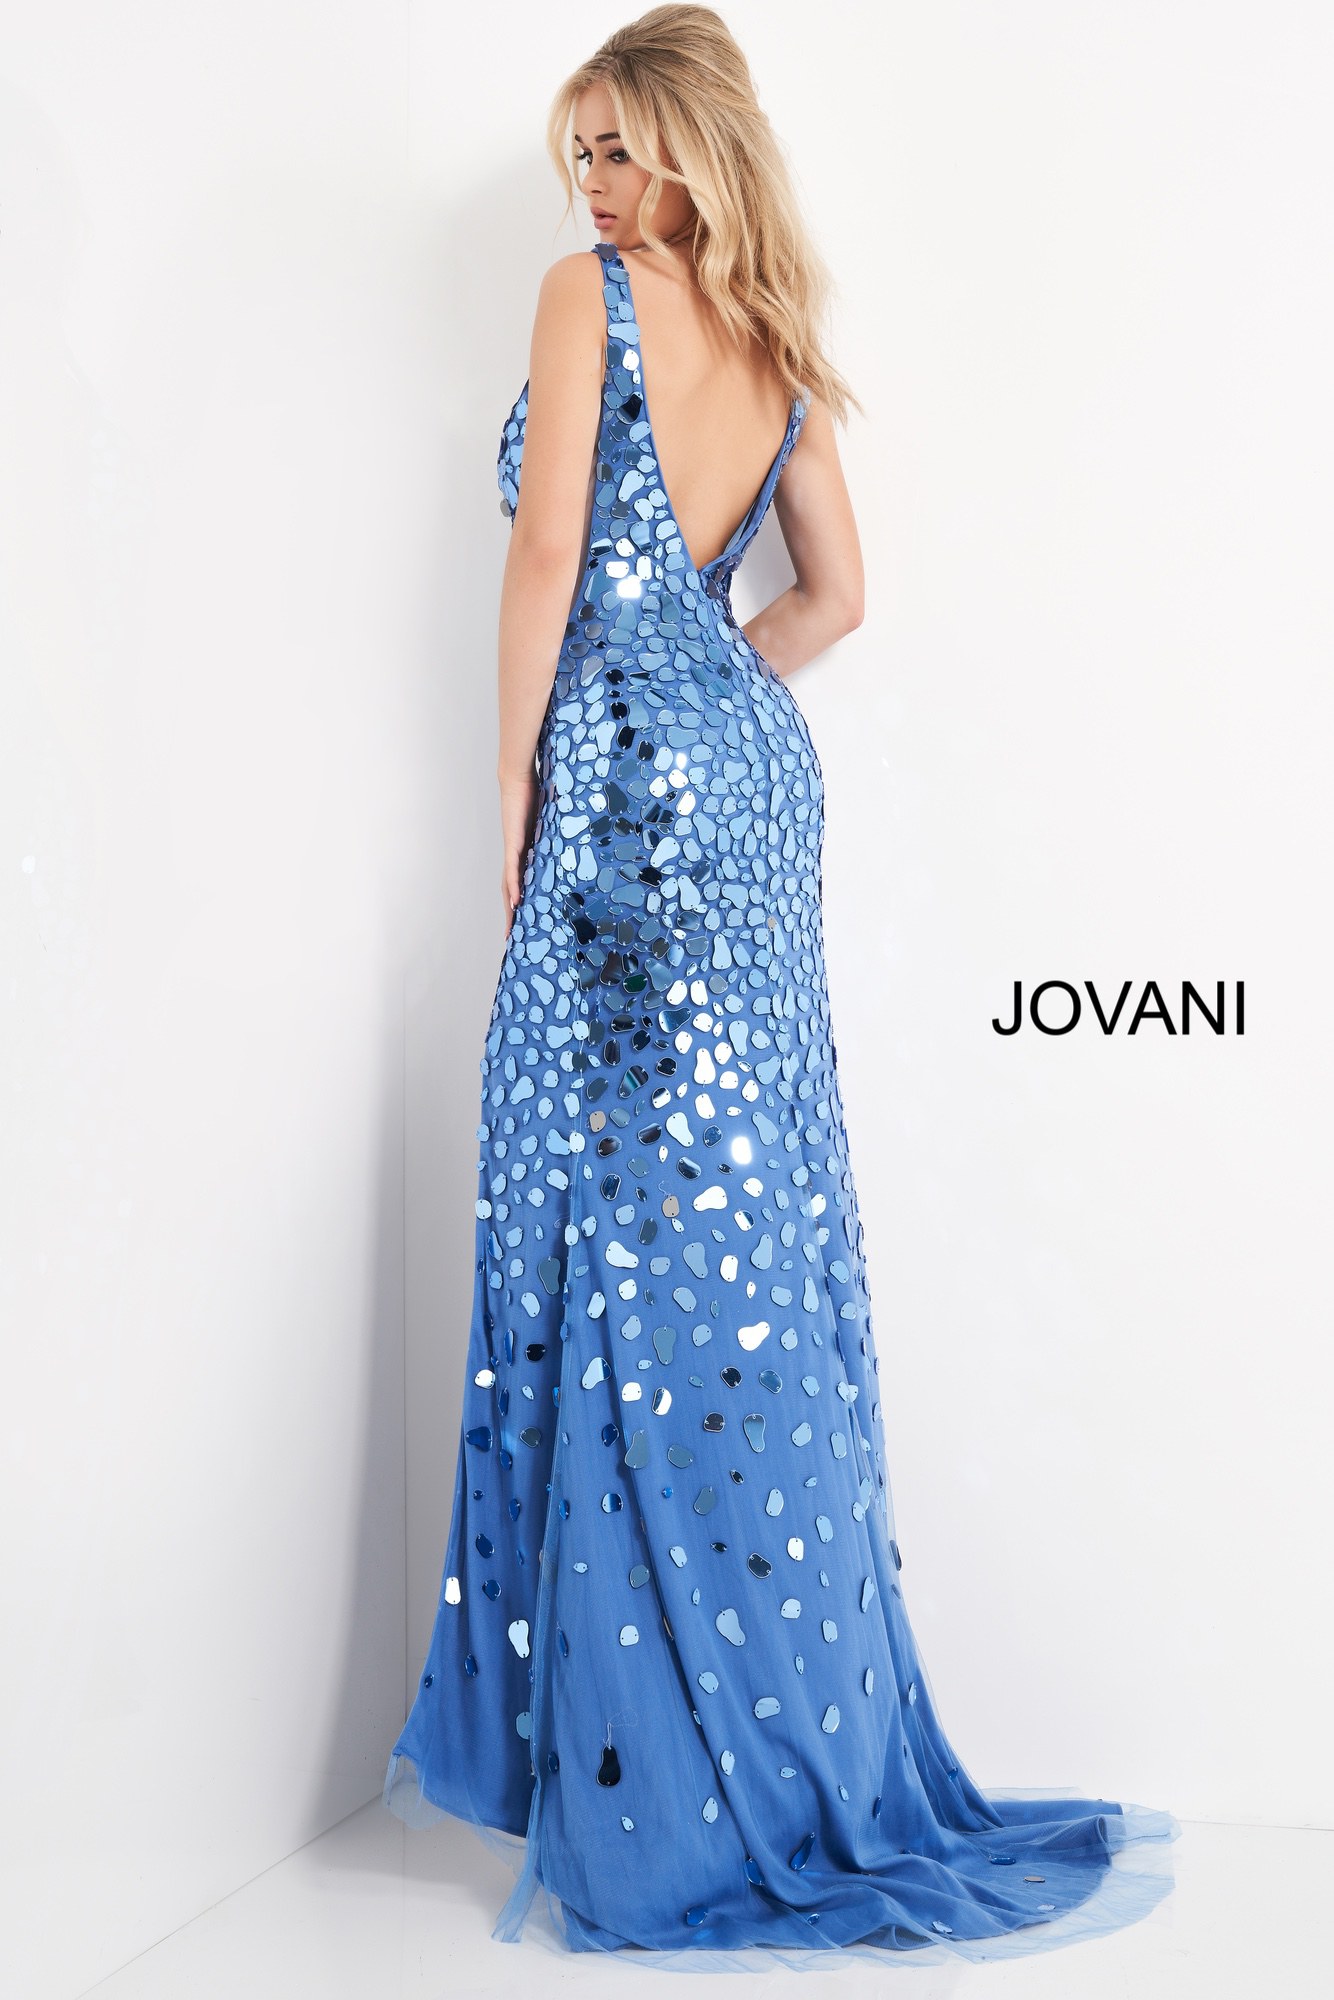 Jovani 02479 Long Cut Glass V Neck Party Dress